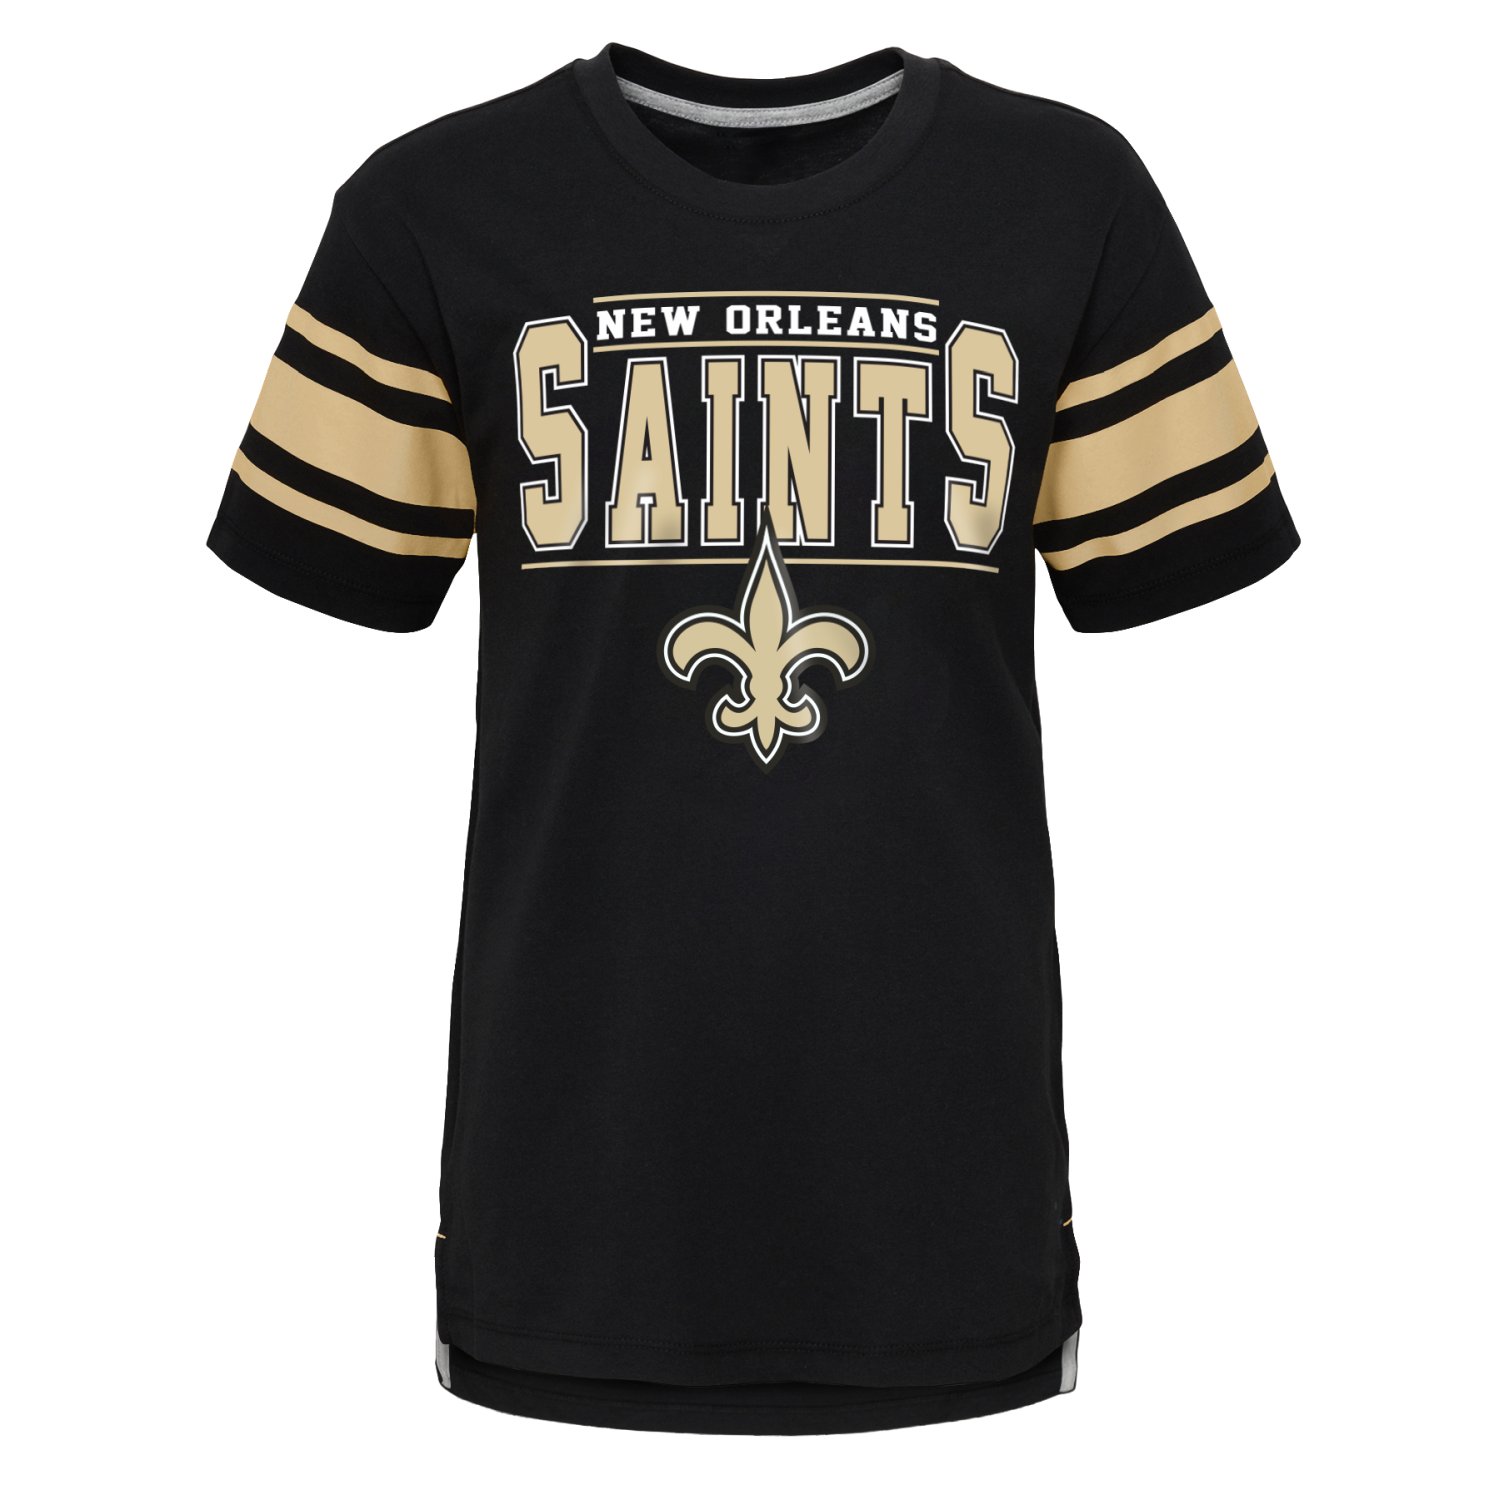 Kinder NFL Shirt - HUDDLE UP New Orleans Saints | Kinder | Bekleidung ...